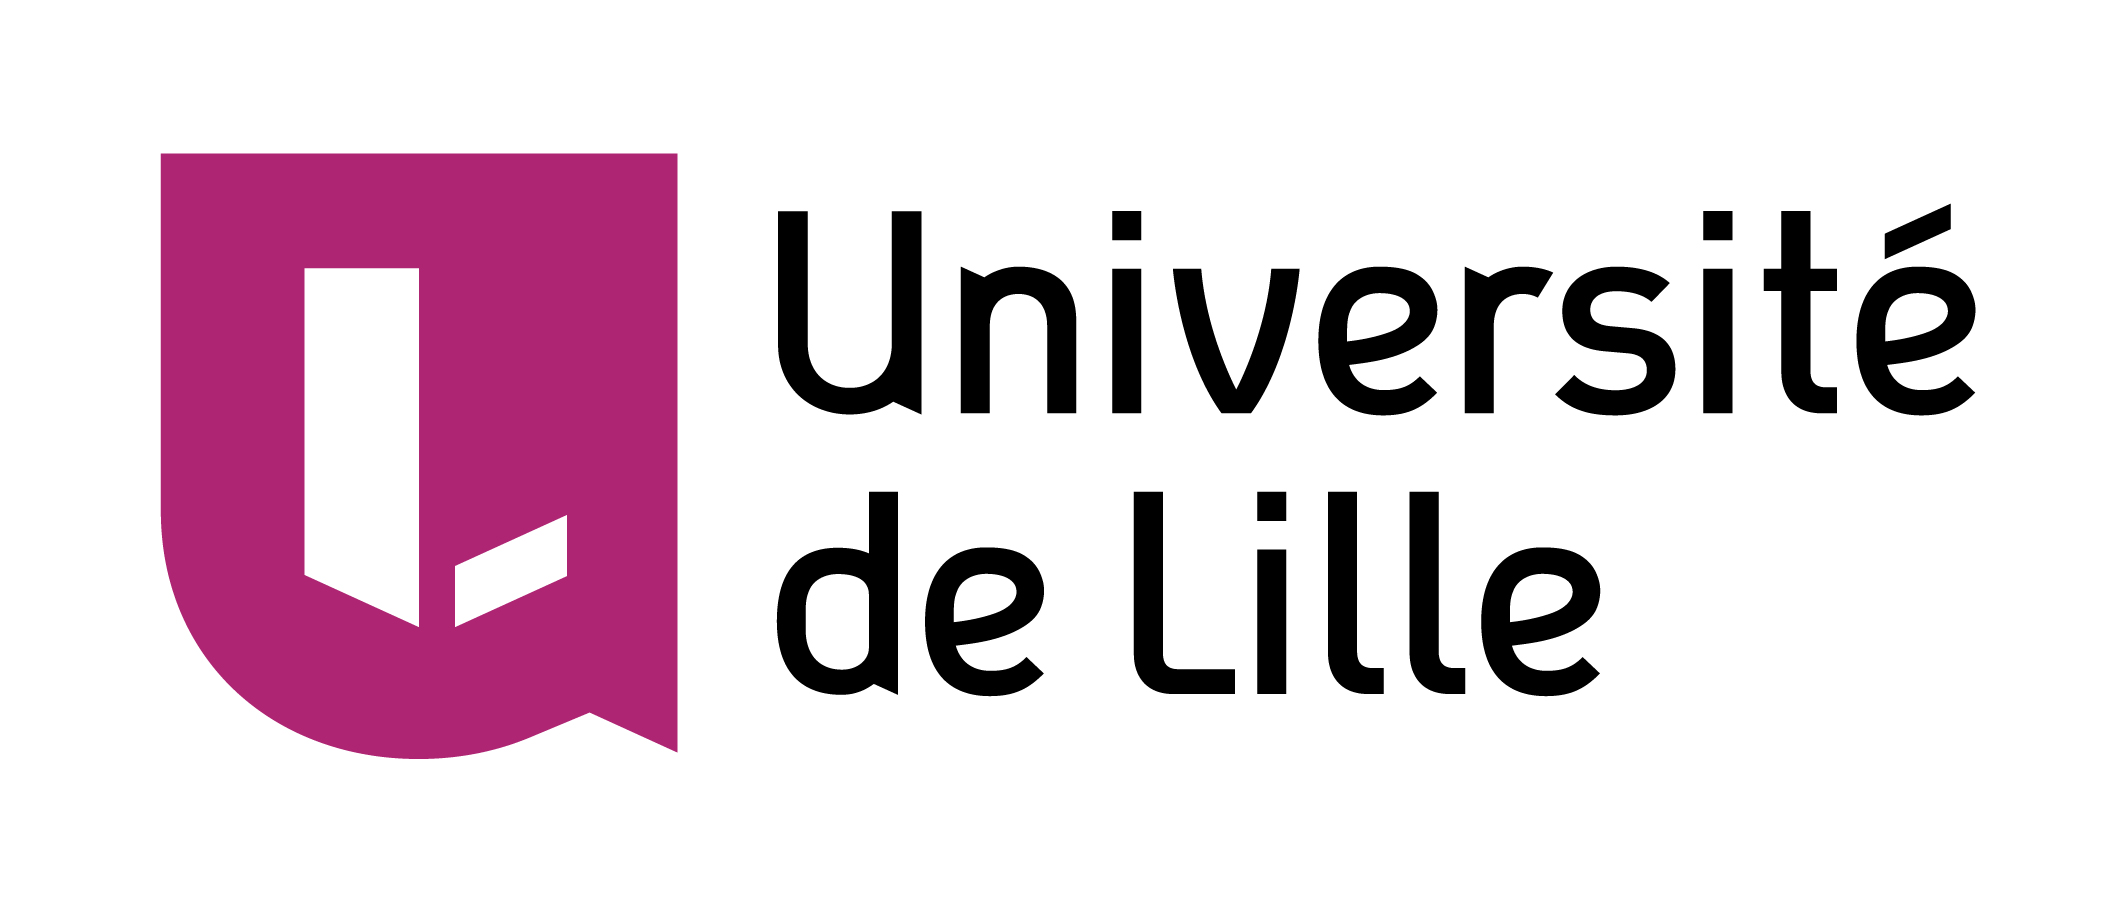 Université de Lille 
Formations en mathématiques au niveau Master de l’Université de Lille